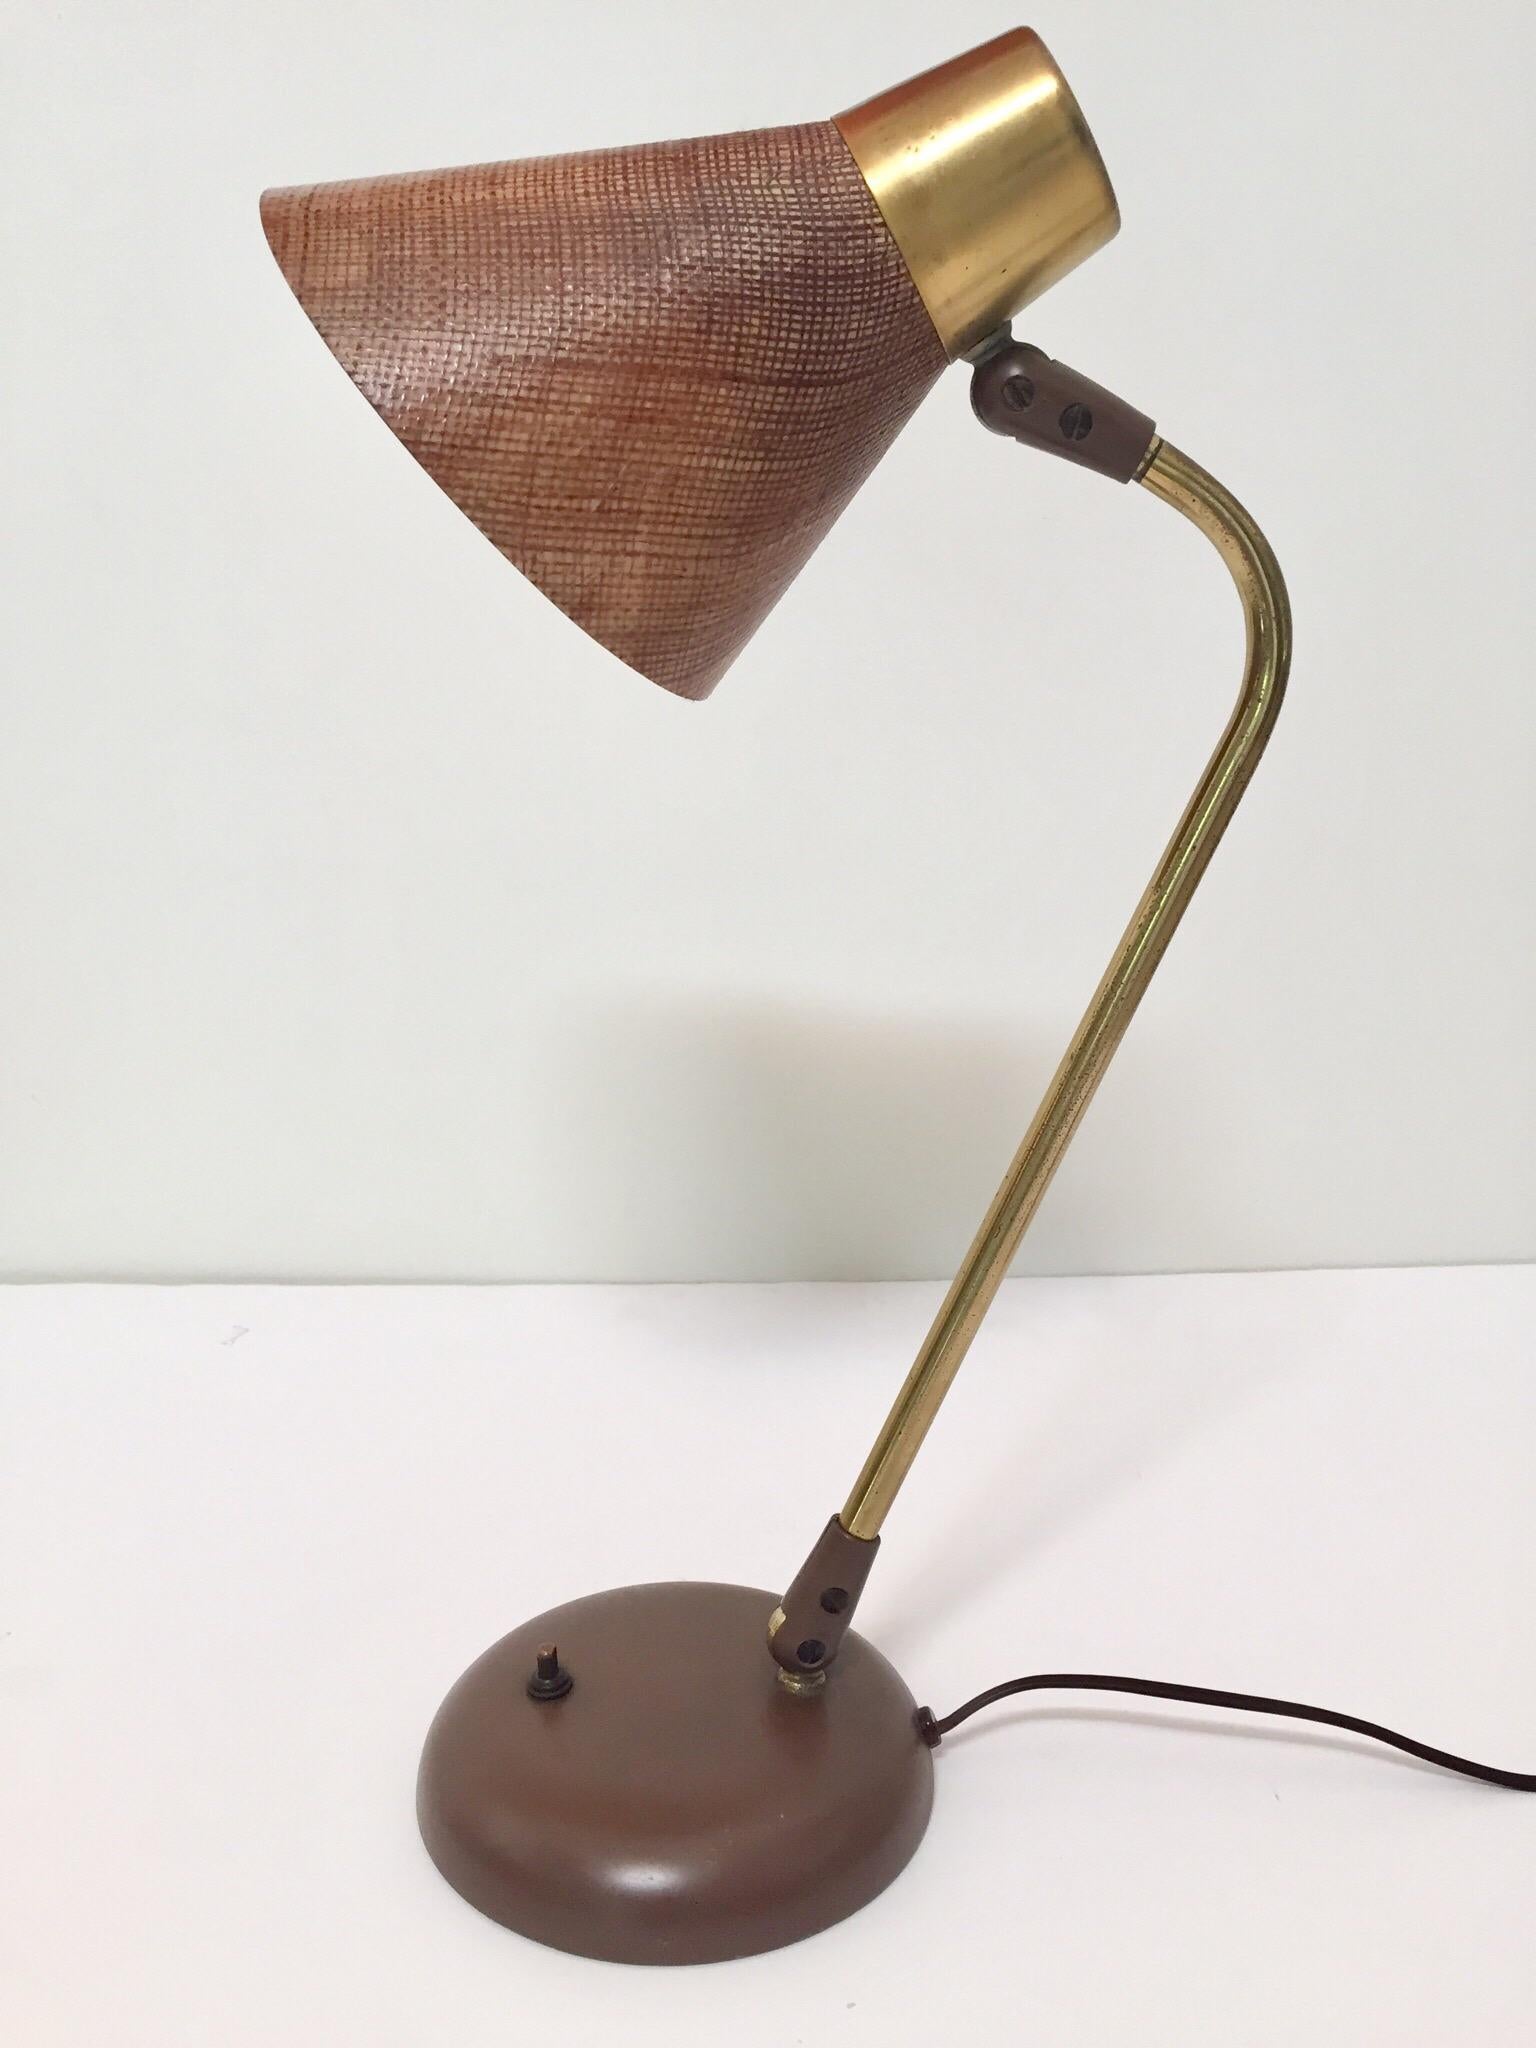 Enameled Gerald Thurston Desk Table Lamp for Lightolier, 1950s